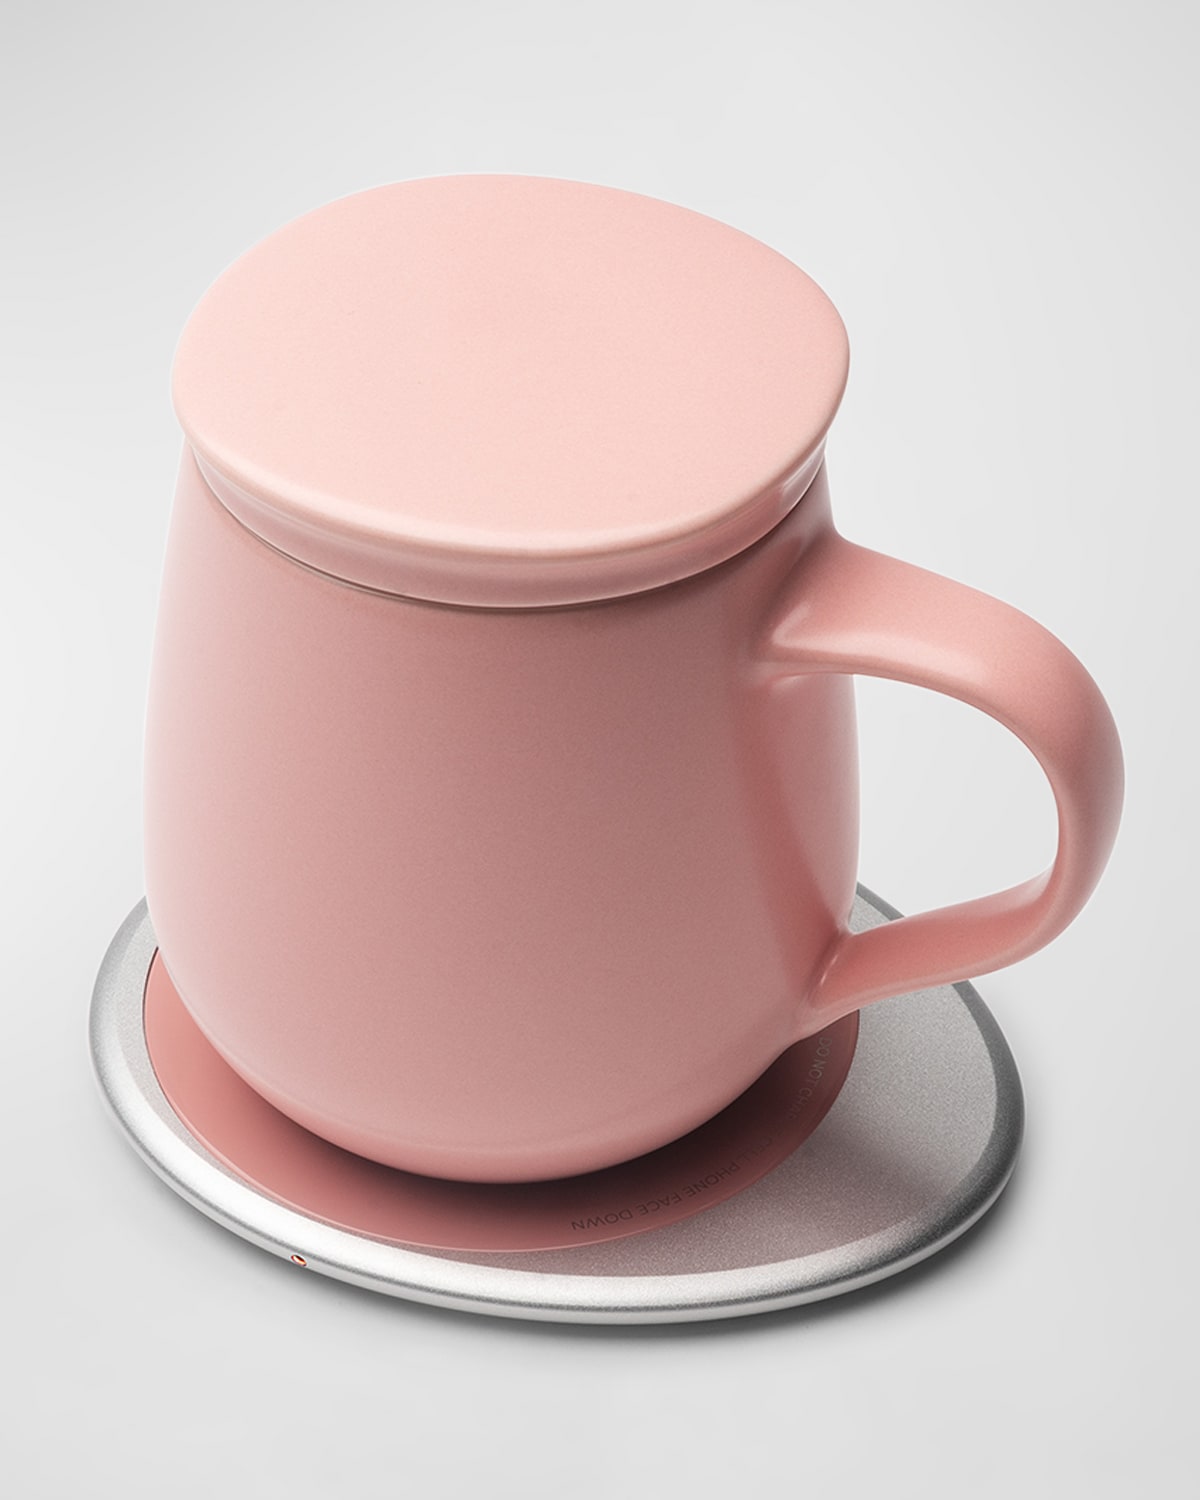 Ohom Ui Self-heating Ceramic Mug In Sheer Pink